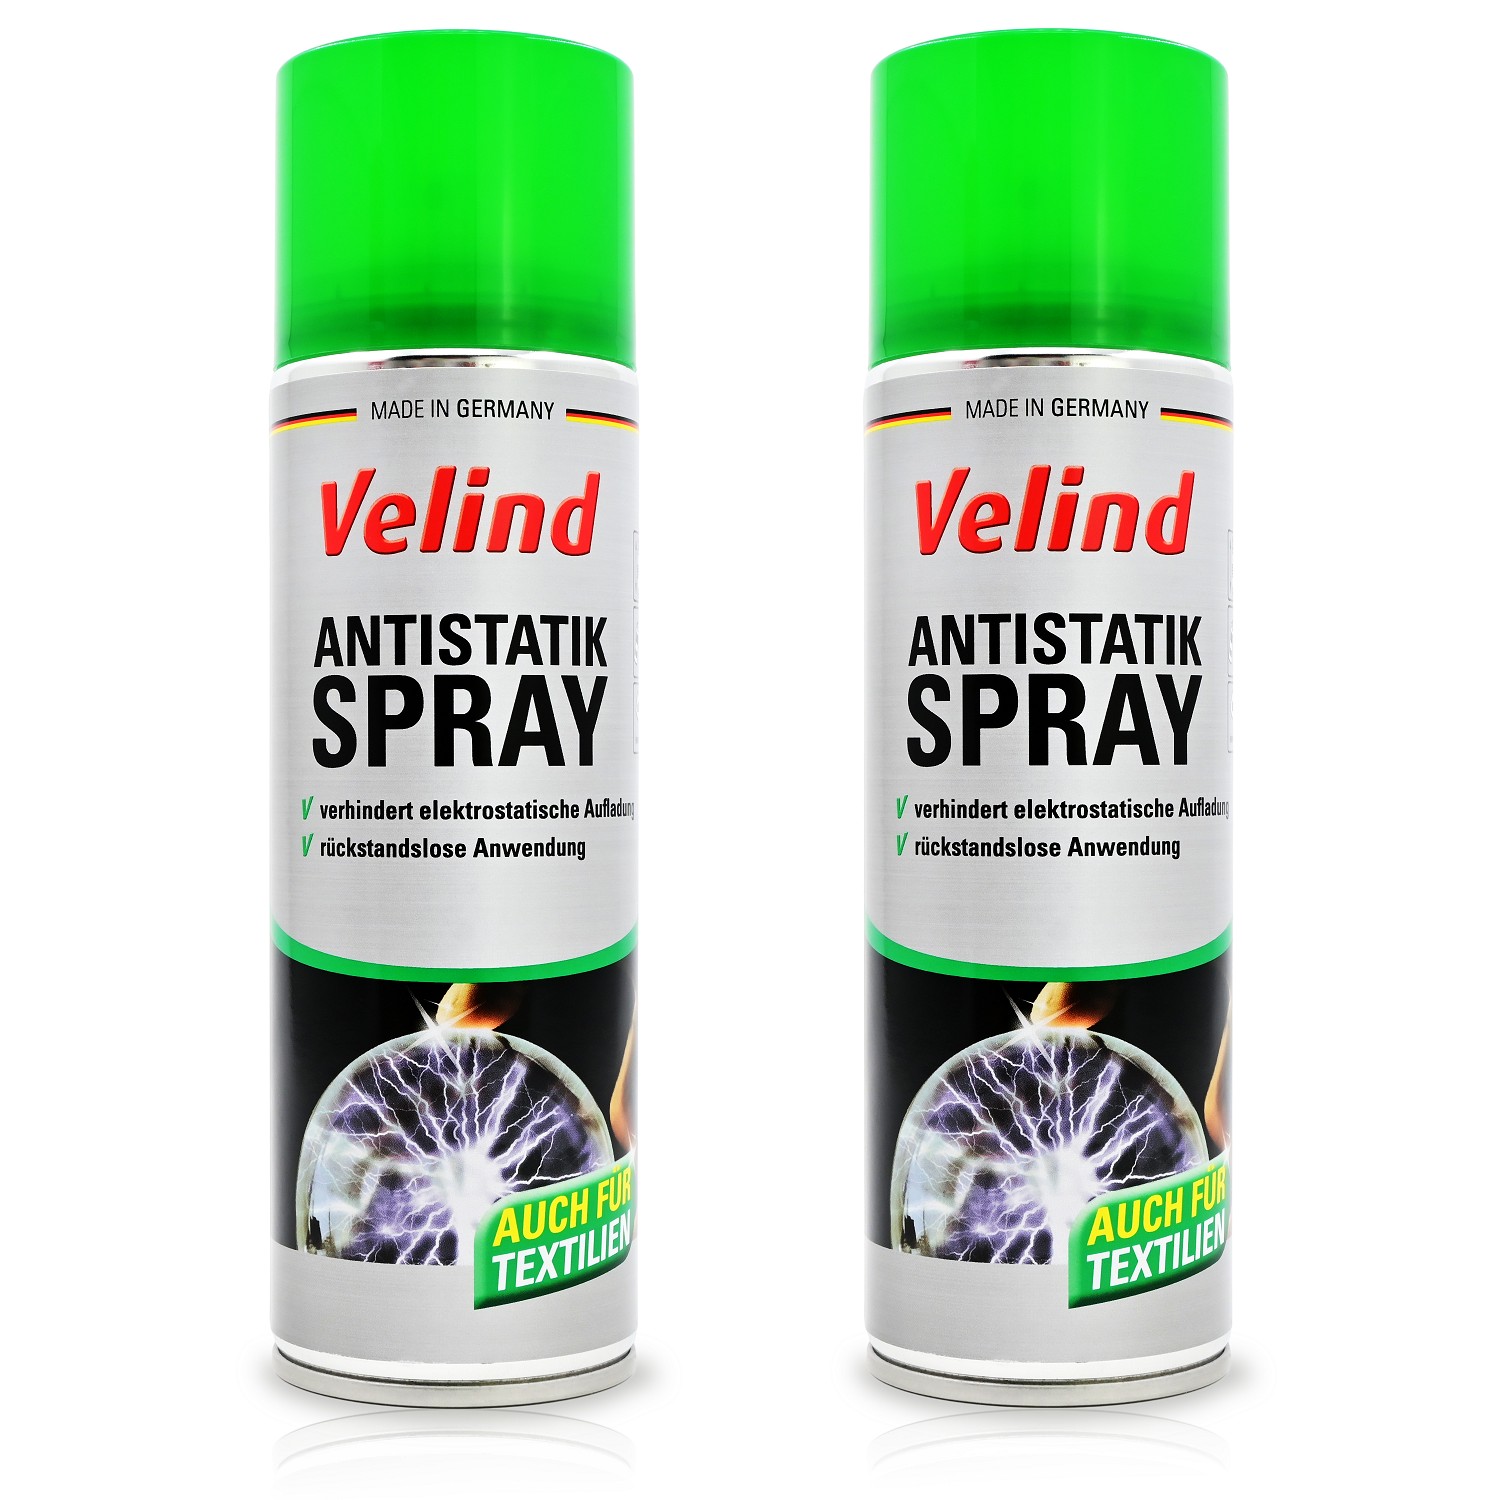 Velind Antistatik Spray Set2, 300 ml